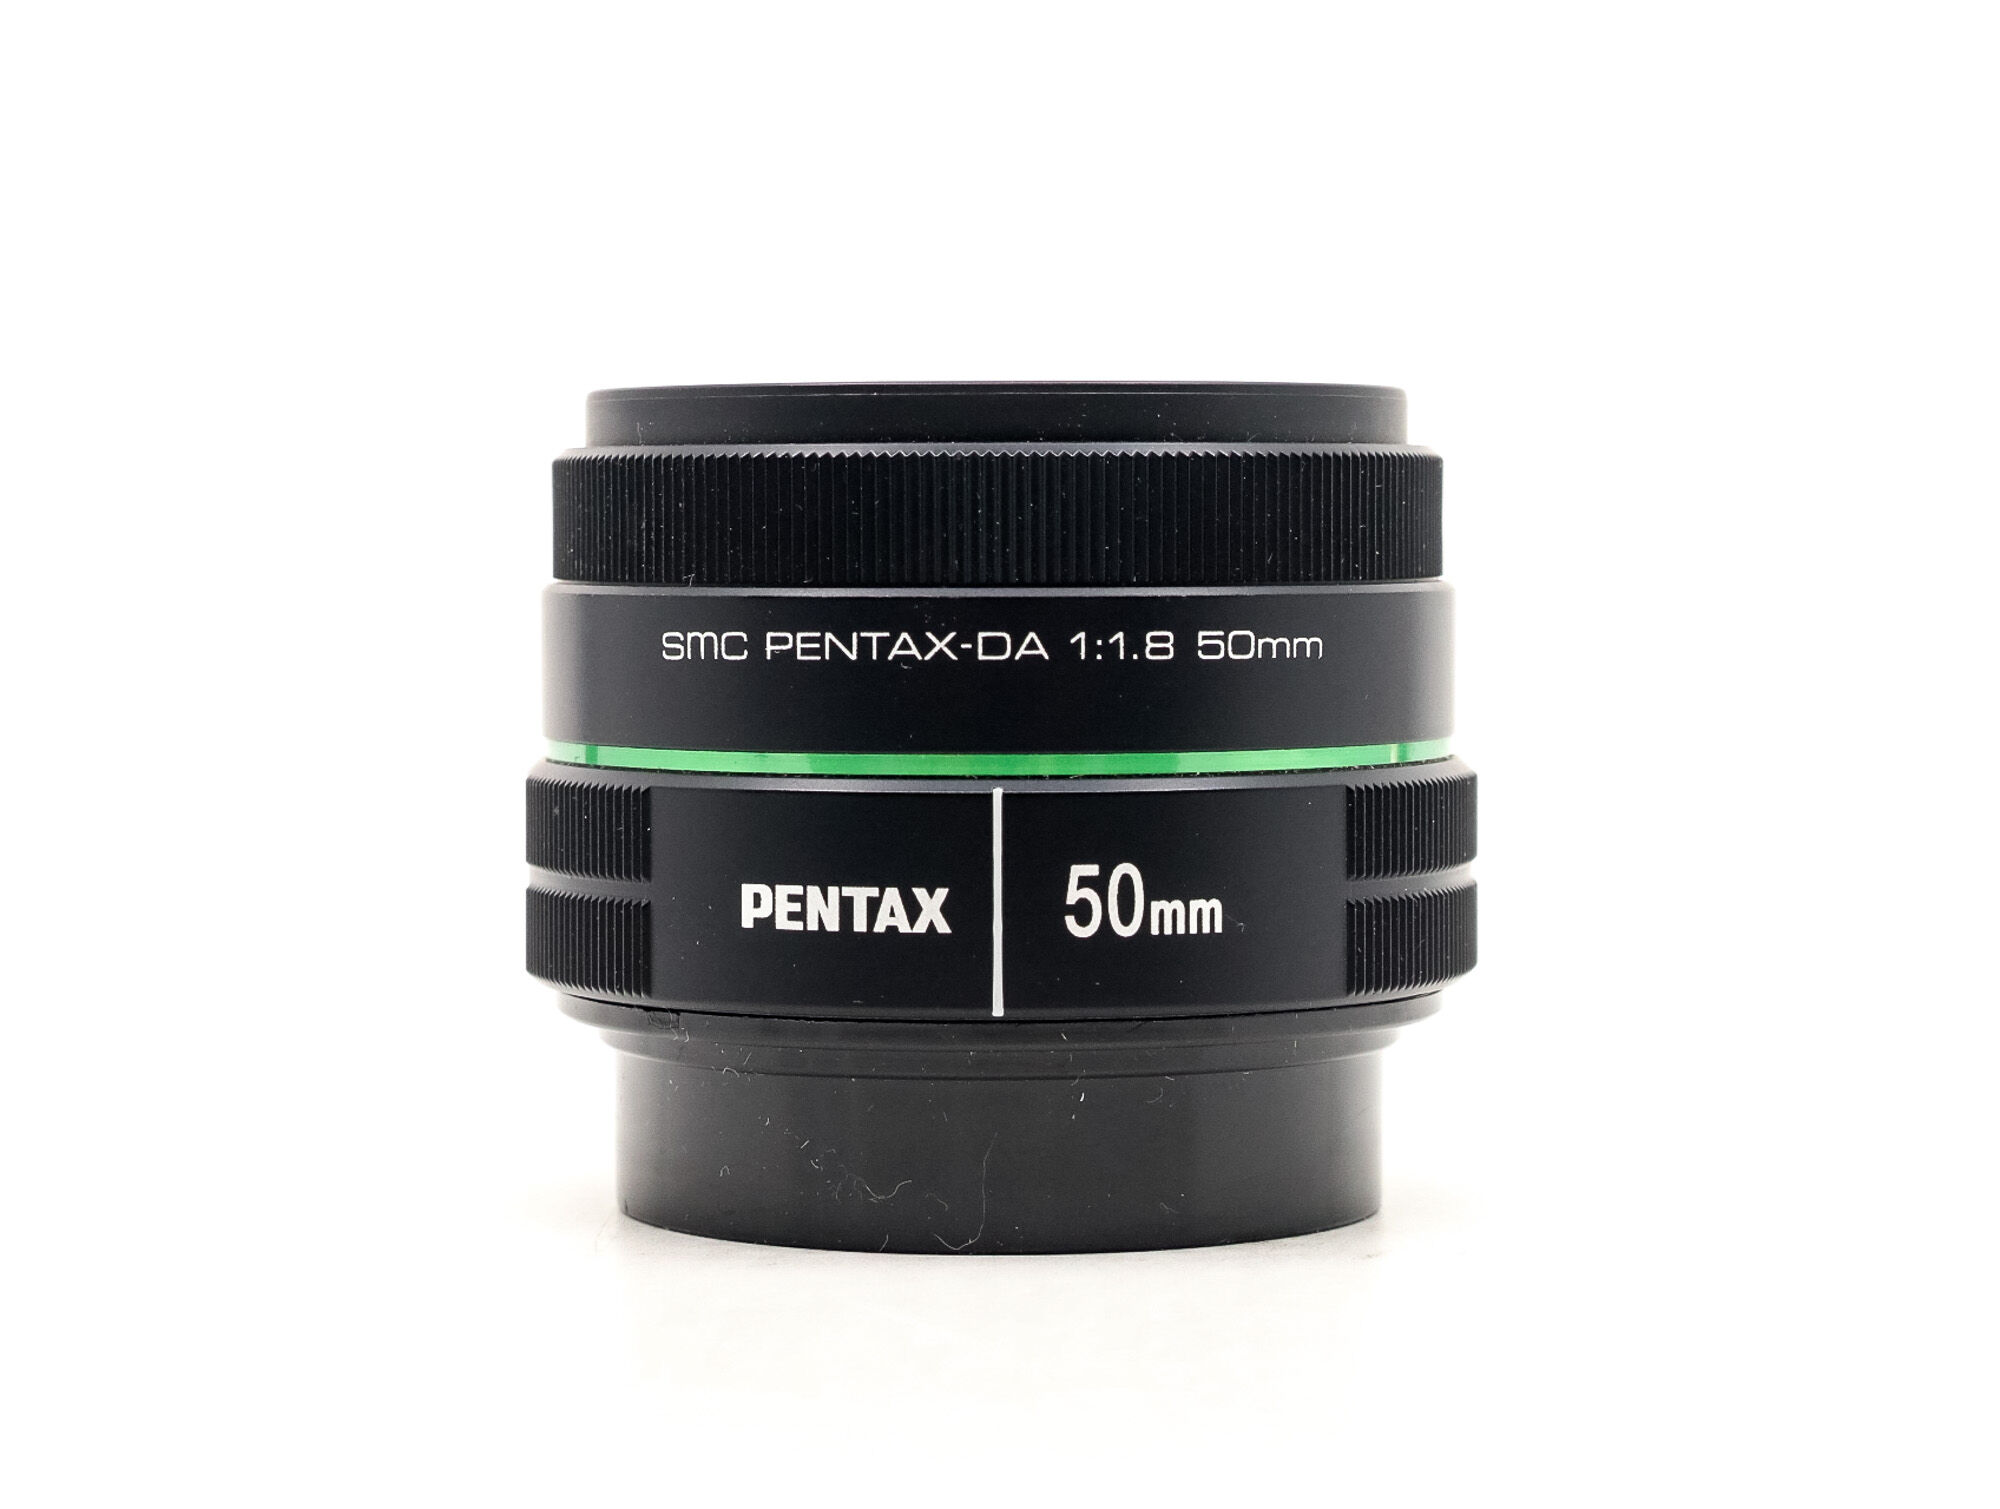 Pentax SMC-DA 50mm f/1.8 (Condition: Like New)